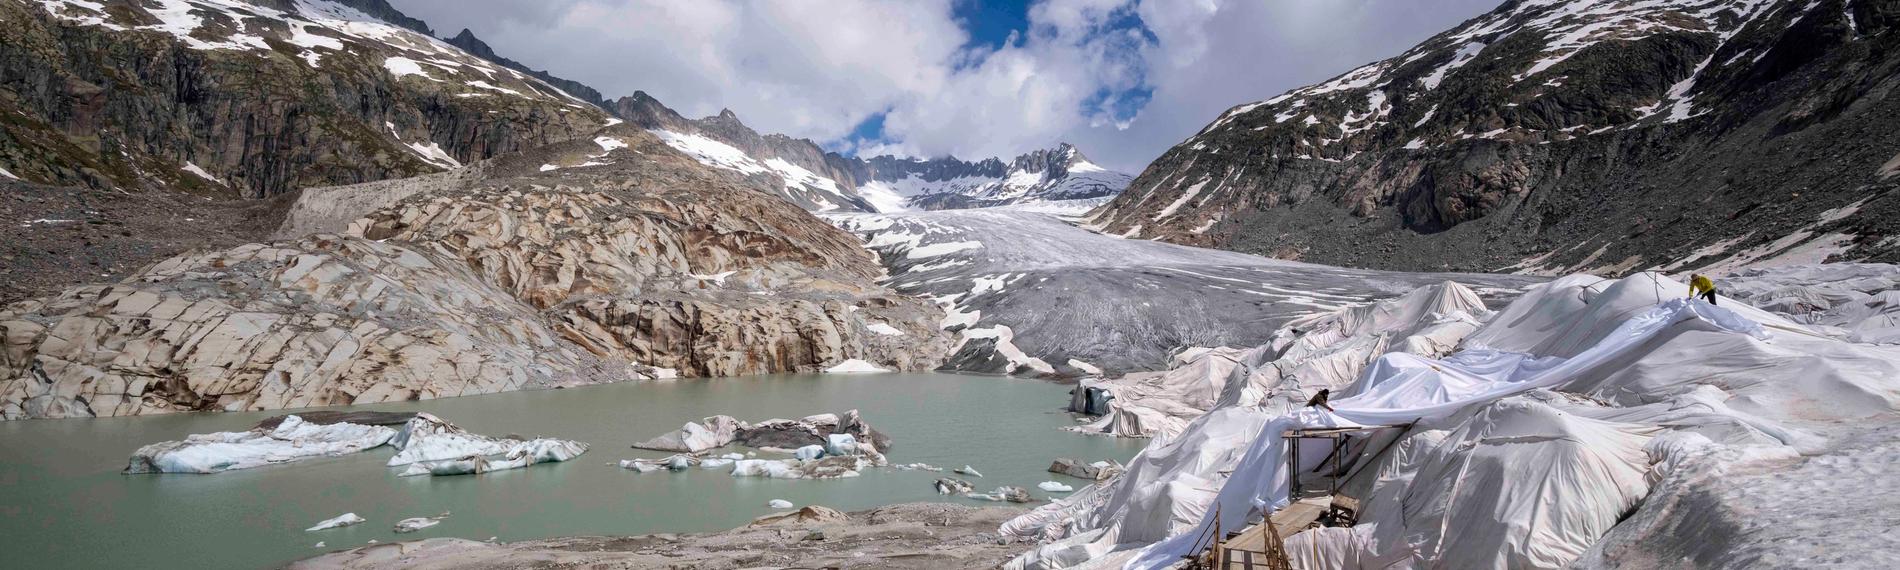 Schmelzende Gletscher in der Schweiz 